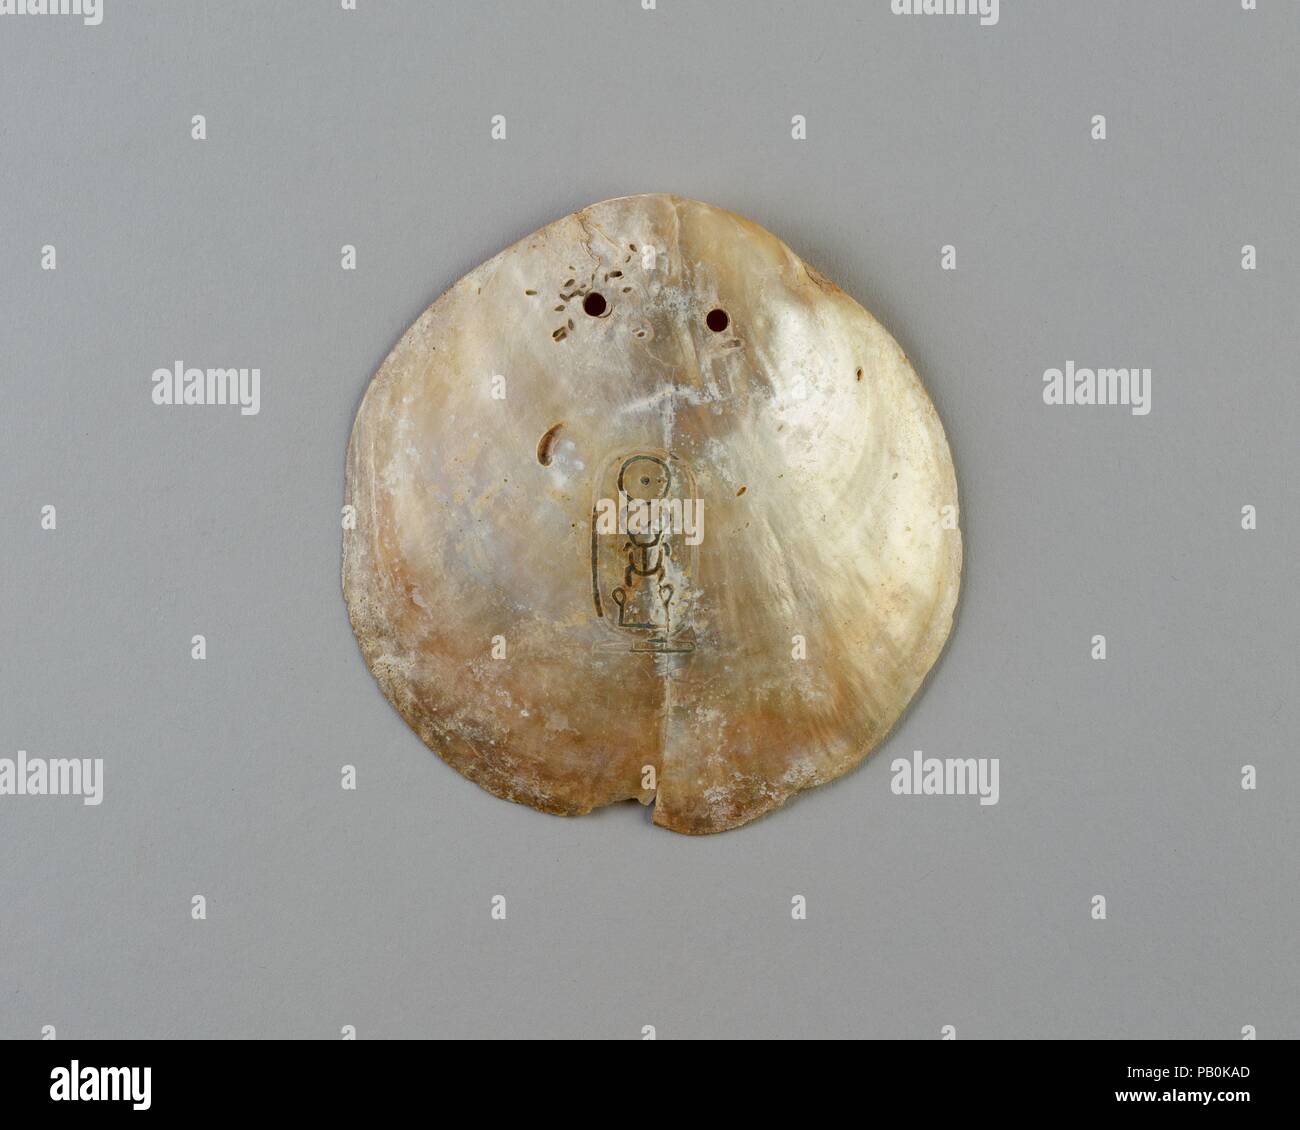 Shell bezeichnet mit der Kartusche des Senwosret I. Abmessungen: L 10,7 × W. 10,5 cm (4 1/4 x 4 1/8 in.). Dynastie: Dynasty 12-18. Herrschaft: Herrschaft des Senwosret I. oder später. Datum: Ca. 1981-1550 v. Chr.. Poliert bis in die innere Schicht von Perlmutt (Perlmutt), diese Irisierenden Oyster Shell wurde mit zwei Löchern durchbohrt, so dass es könnte aufgereiht und hing um den Hals. Die königlichen Namen Senwosret hat in die Oberfläche eingeschnitten worden. Es ist eine von etwa fünfzig solcher bekannten Shells, die meisten eingeschrieben, wie in diesem Beispiel, mit dem Nomen (Geburtsname) Senwosret, oder mit dem Namen prenomen (Thron) Kheperkare. Seit Stockfoto